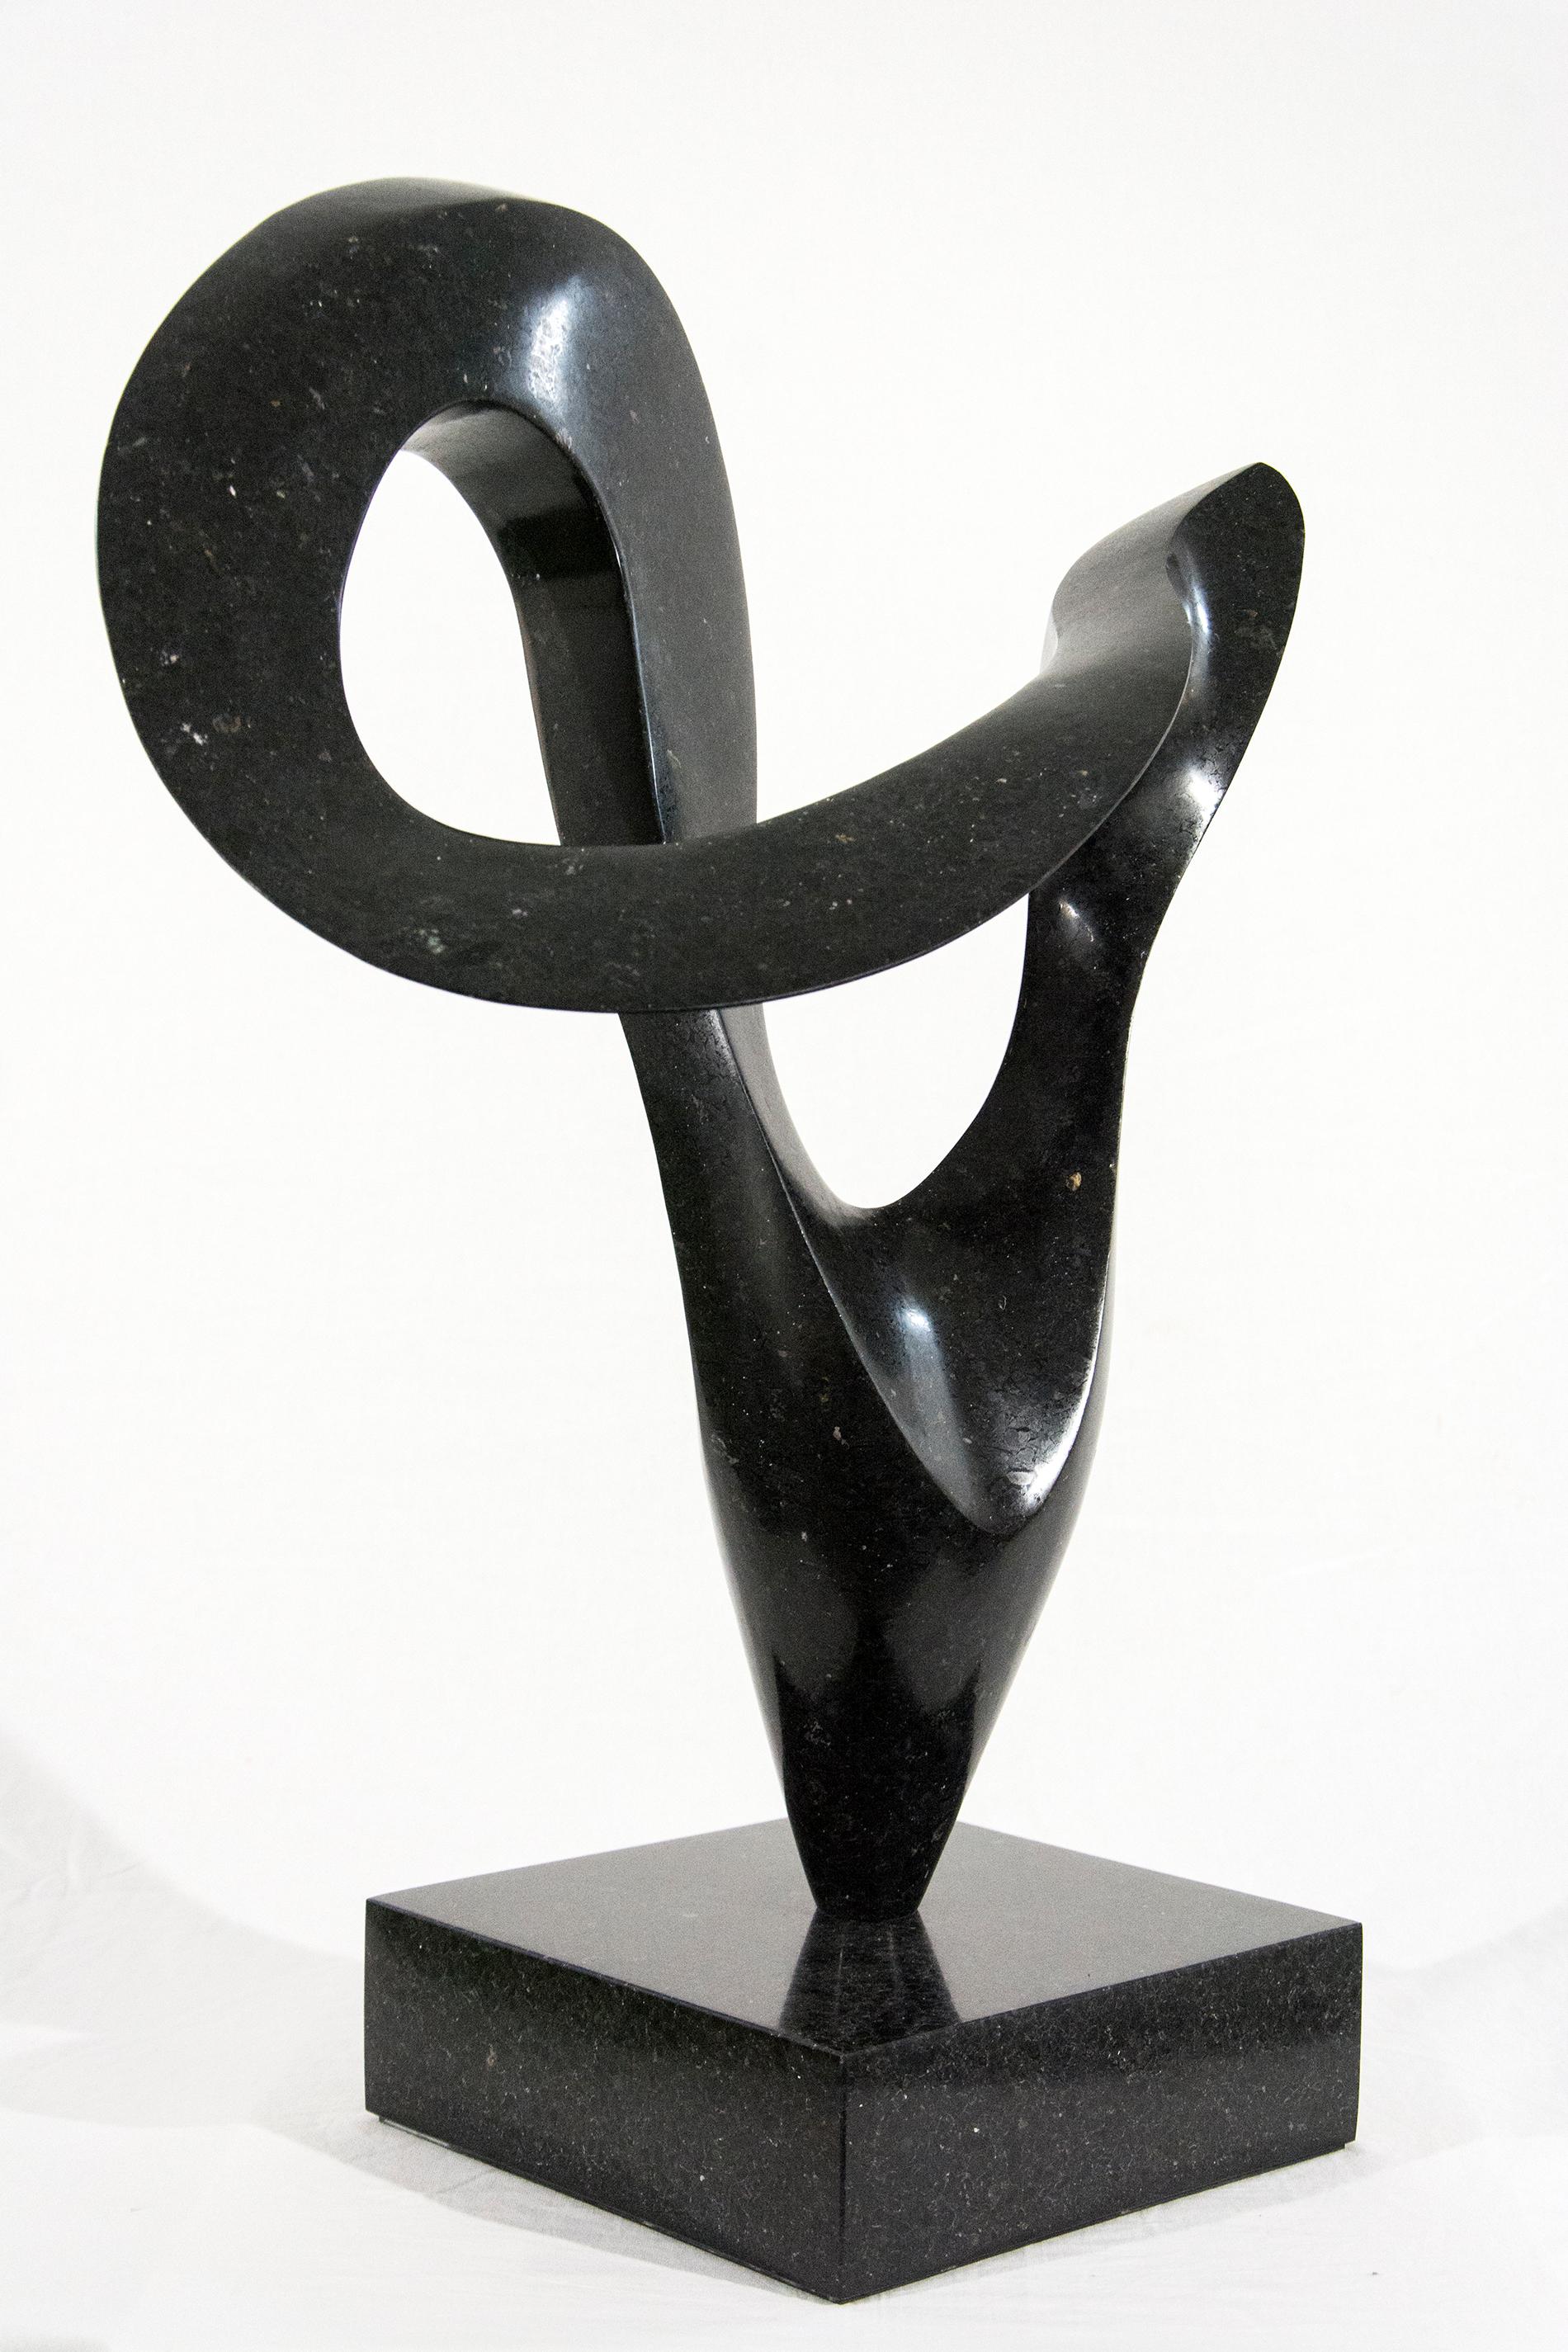 Schwarzer Granit mit glatter Oberfläche wurde von Jeremy Guy in eine elegante, sich drehende Form gemeißelt. Diese lebendige Form, die sich auf ihrer schmalen Basis dynamisch zu drehen scheint, wie eine Pirouette auf einem Fuß, ist auf einem